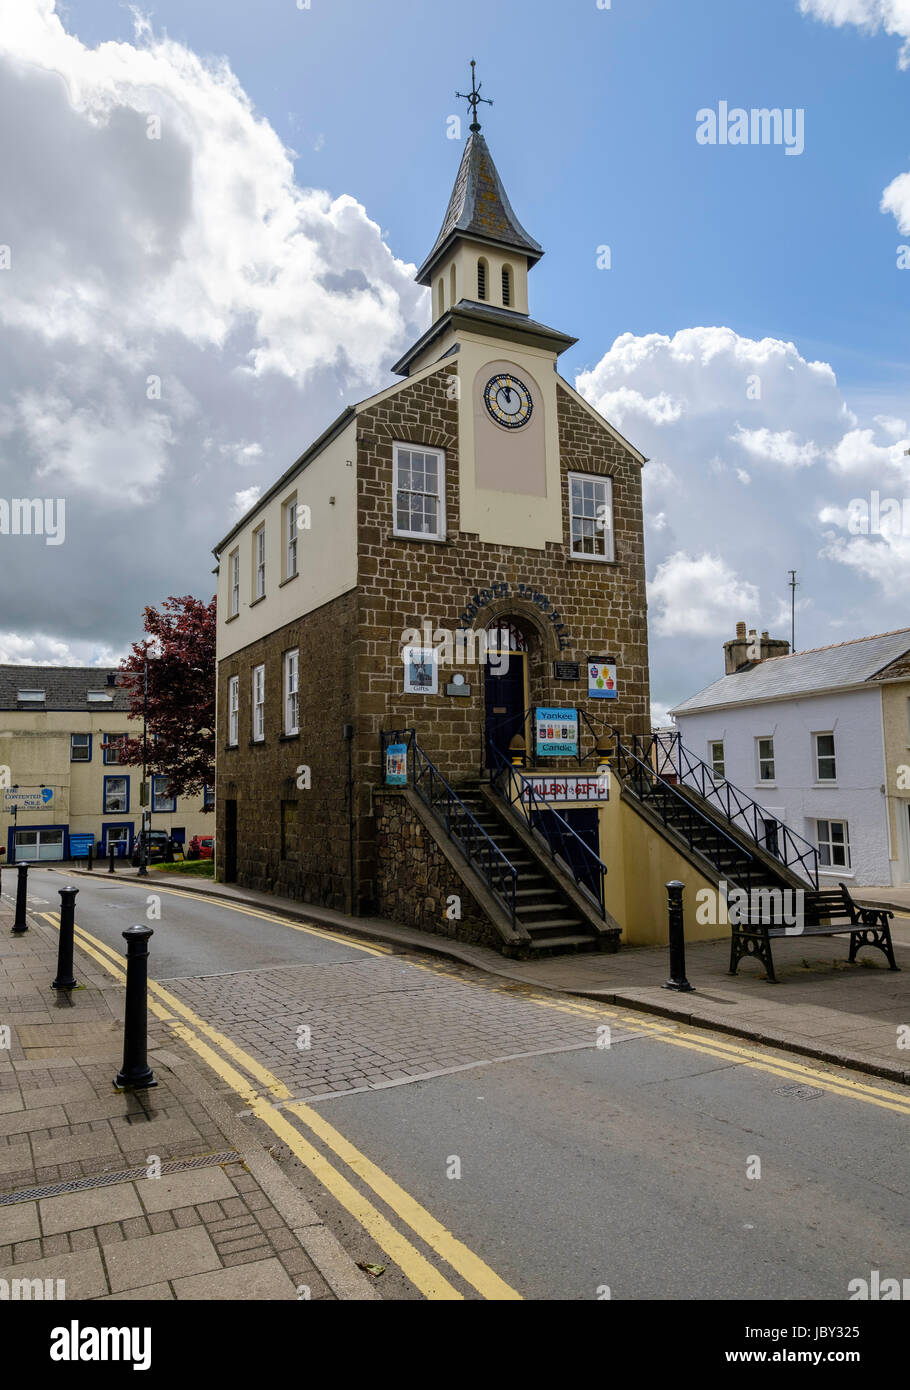 Narberth, Pembrokeshire, High Street zeigt Rathaus mit Uhr und spire Stockfoto